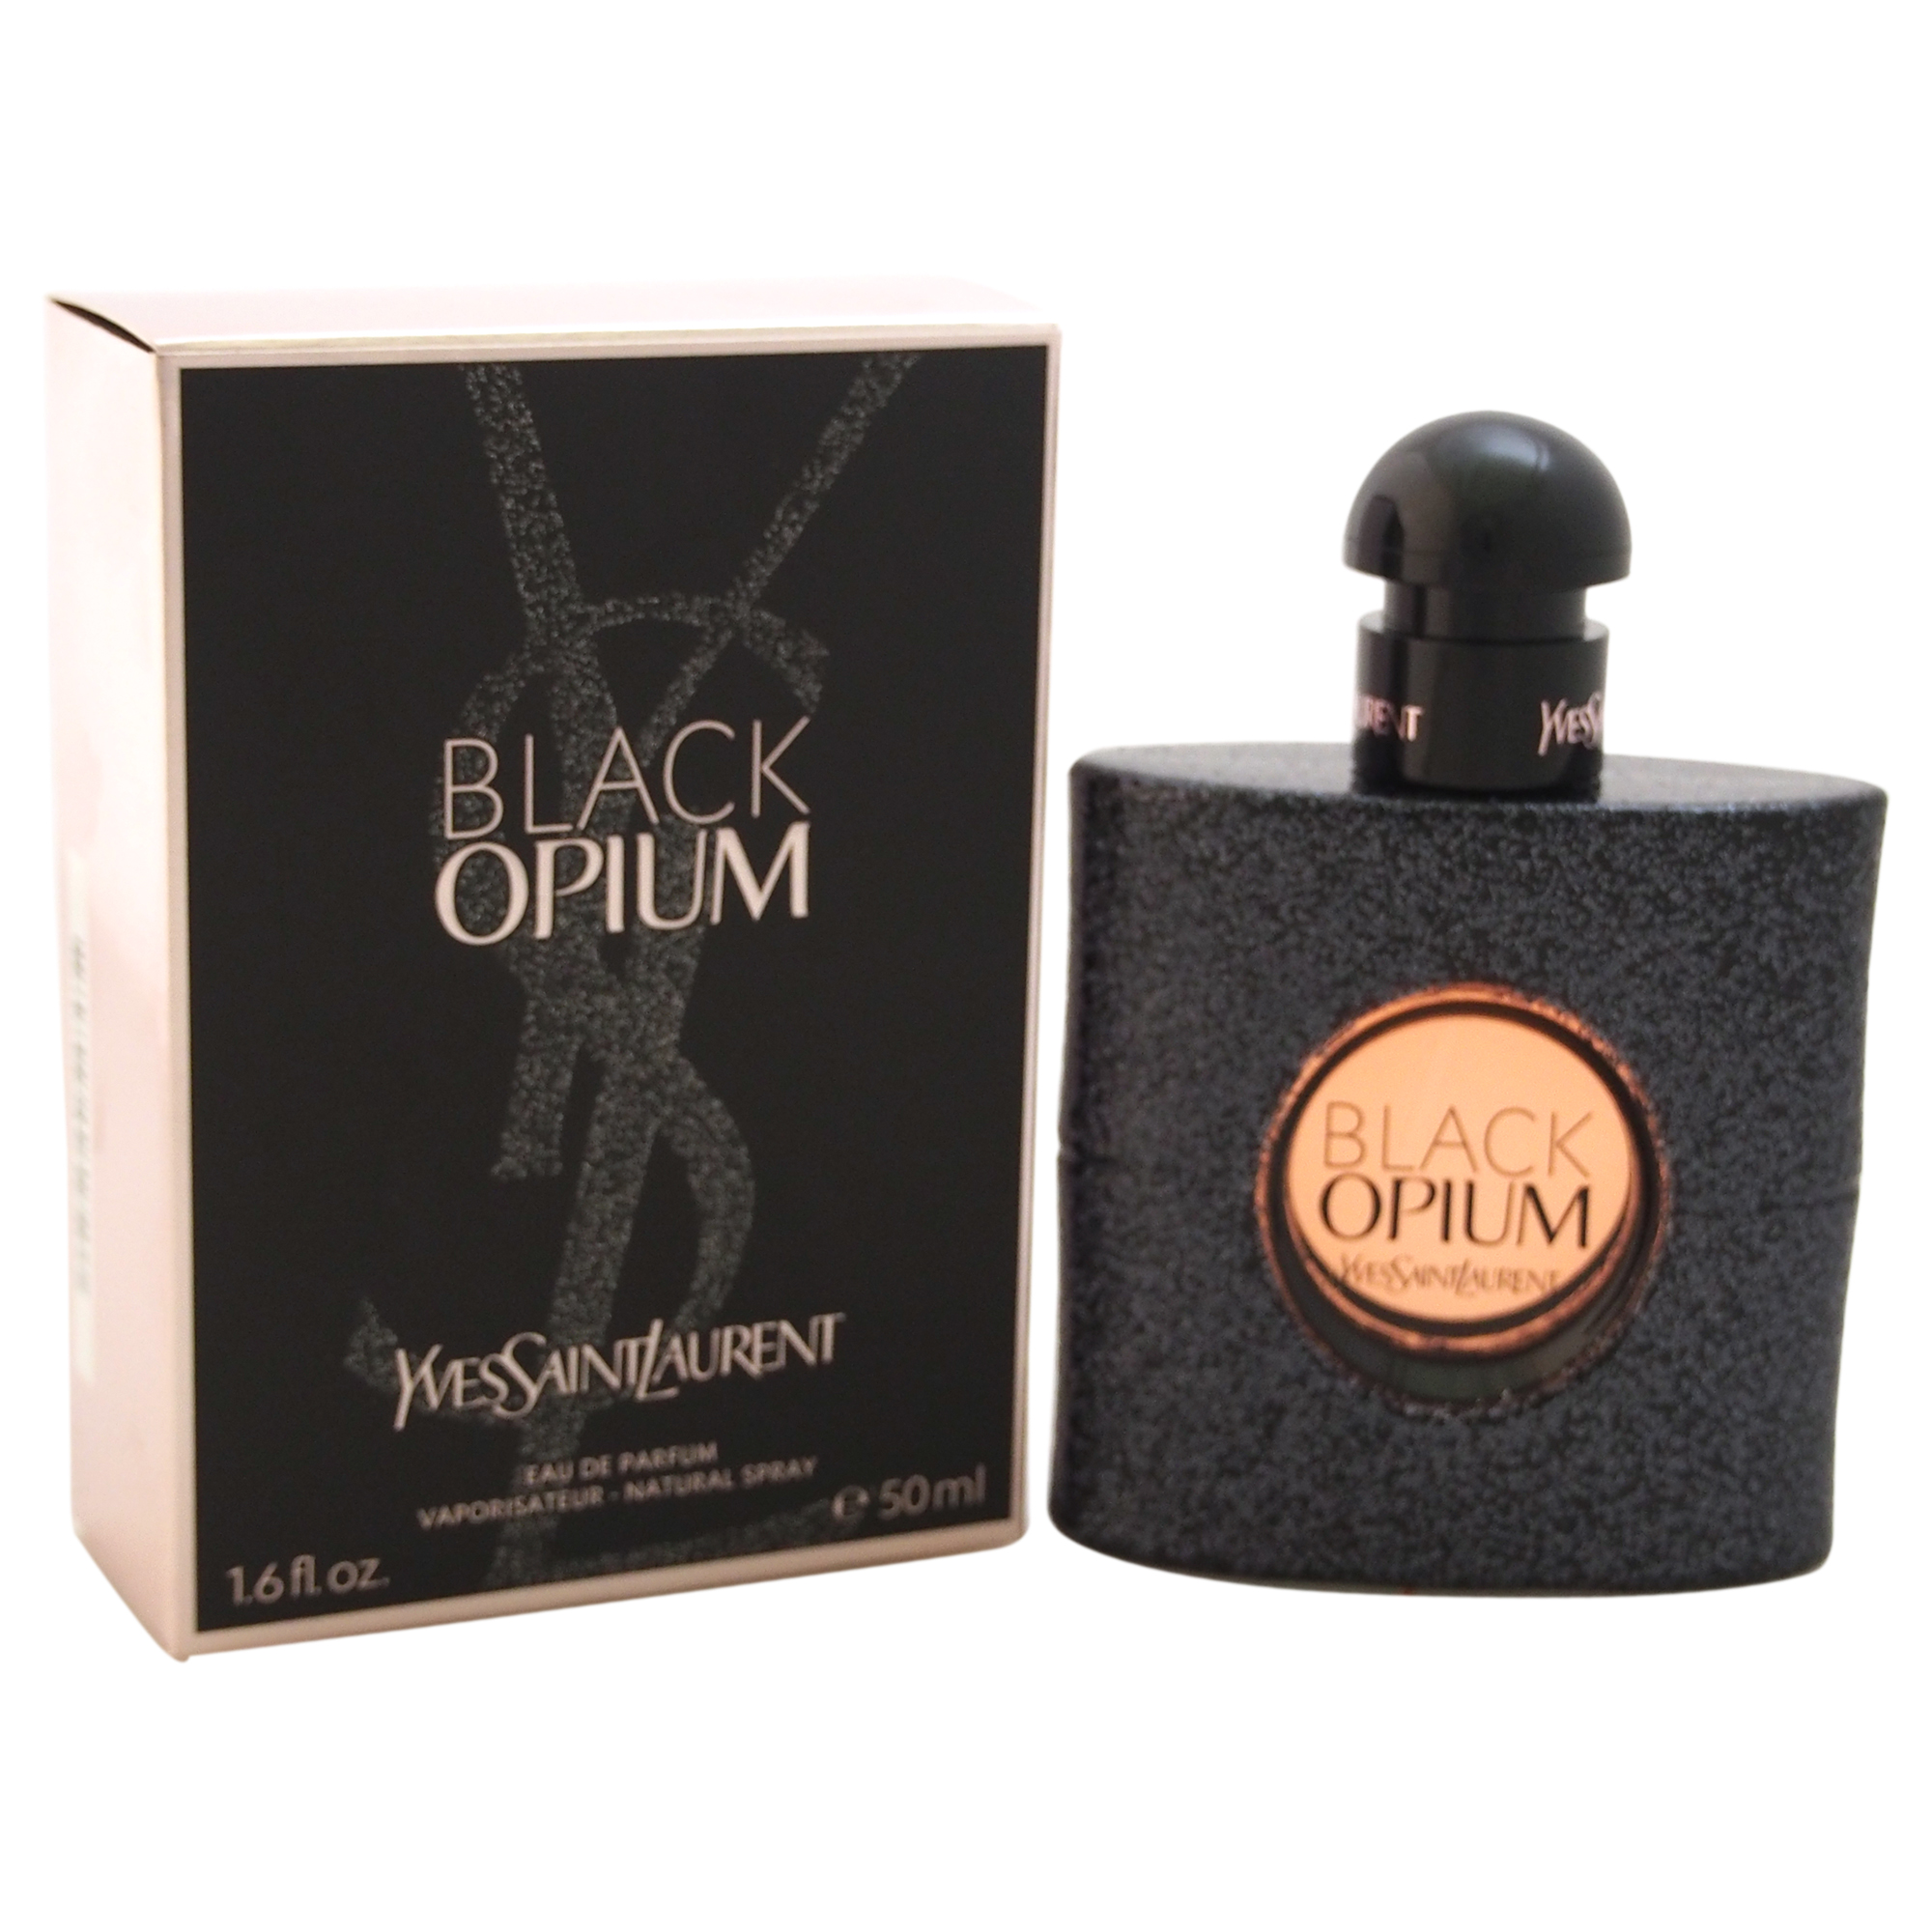 Black Opium by Yves Saint Laurent for Women - 1.6 oz EDP Spray